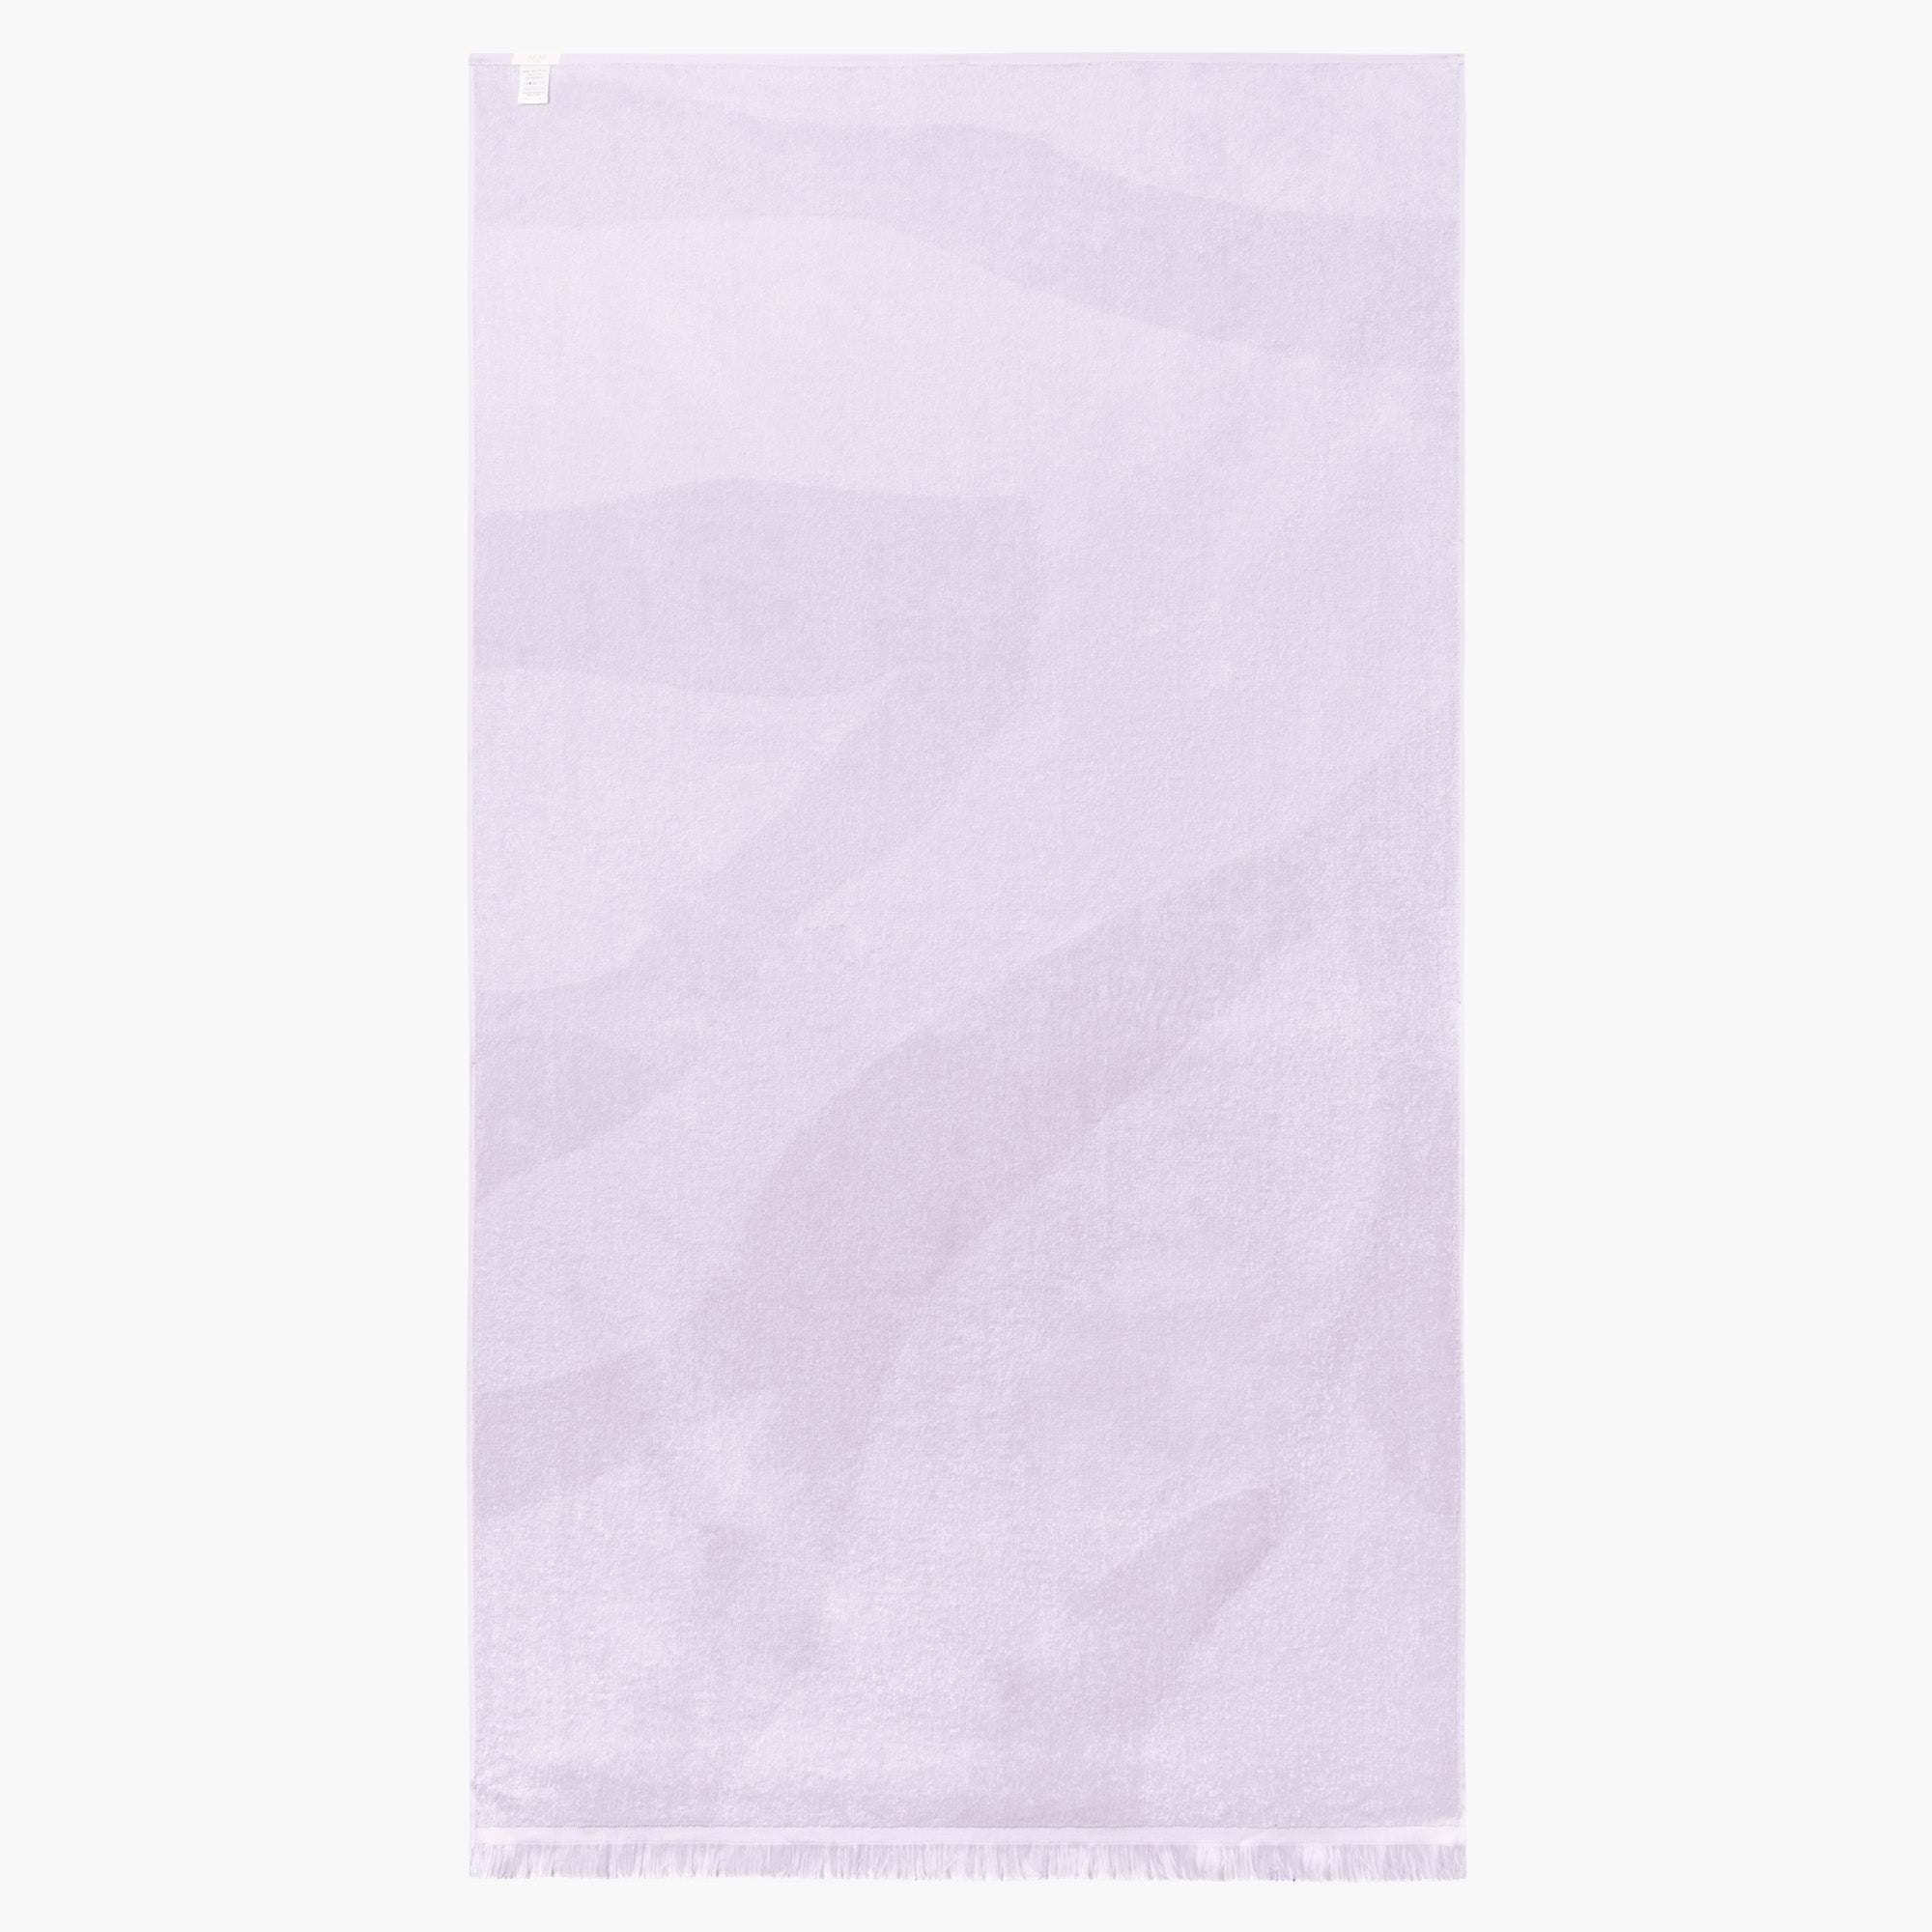 Bandeau tube top in lavender purple – sesestudio